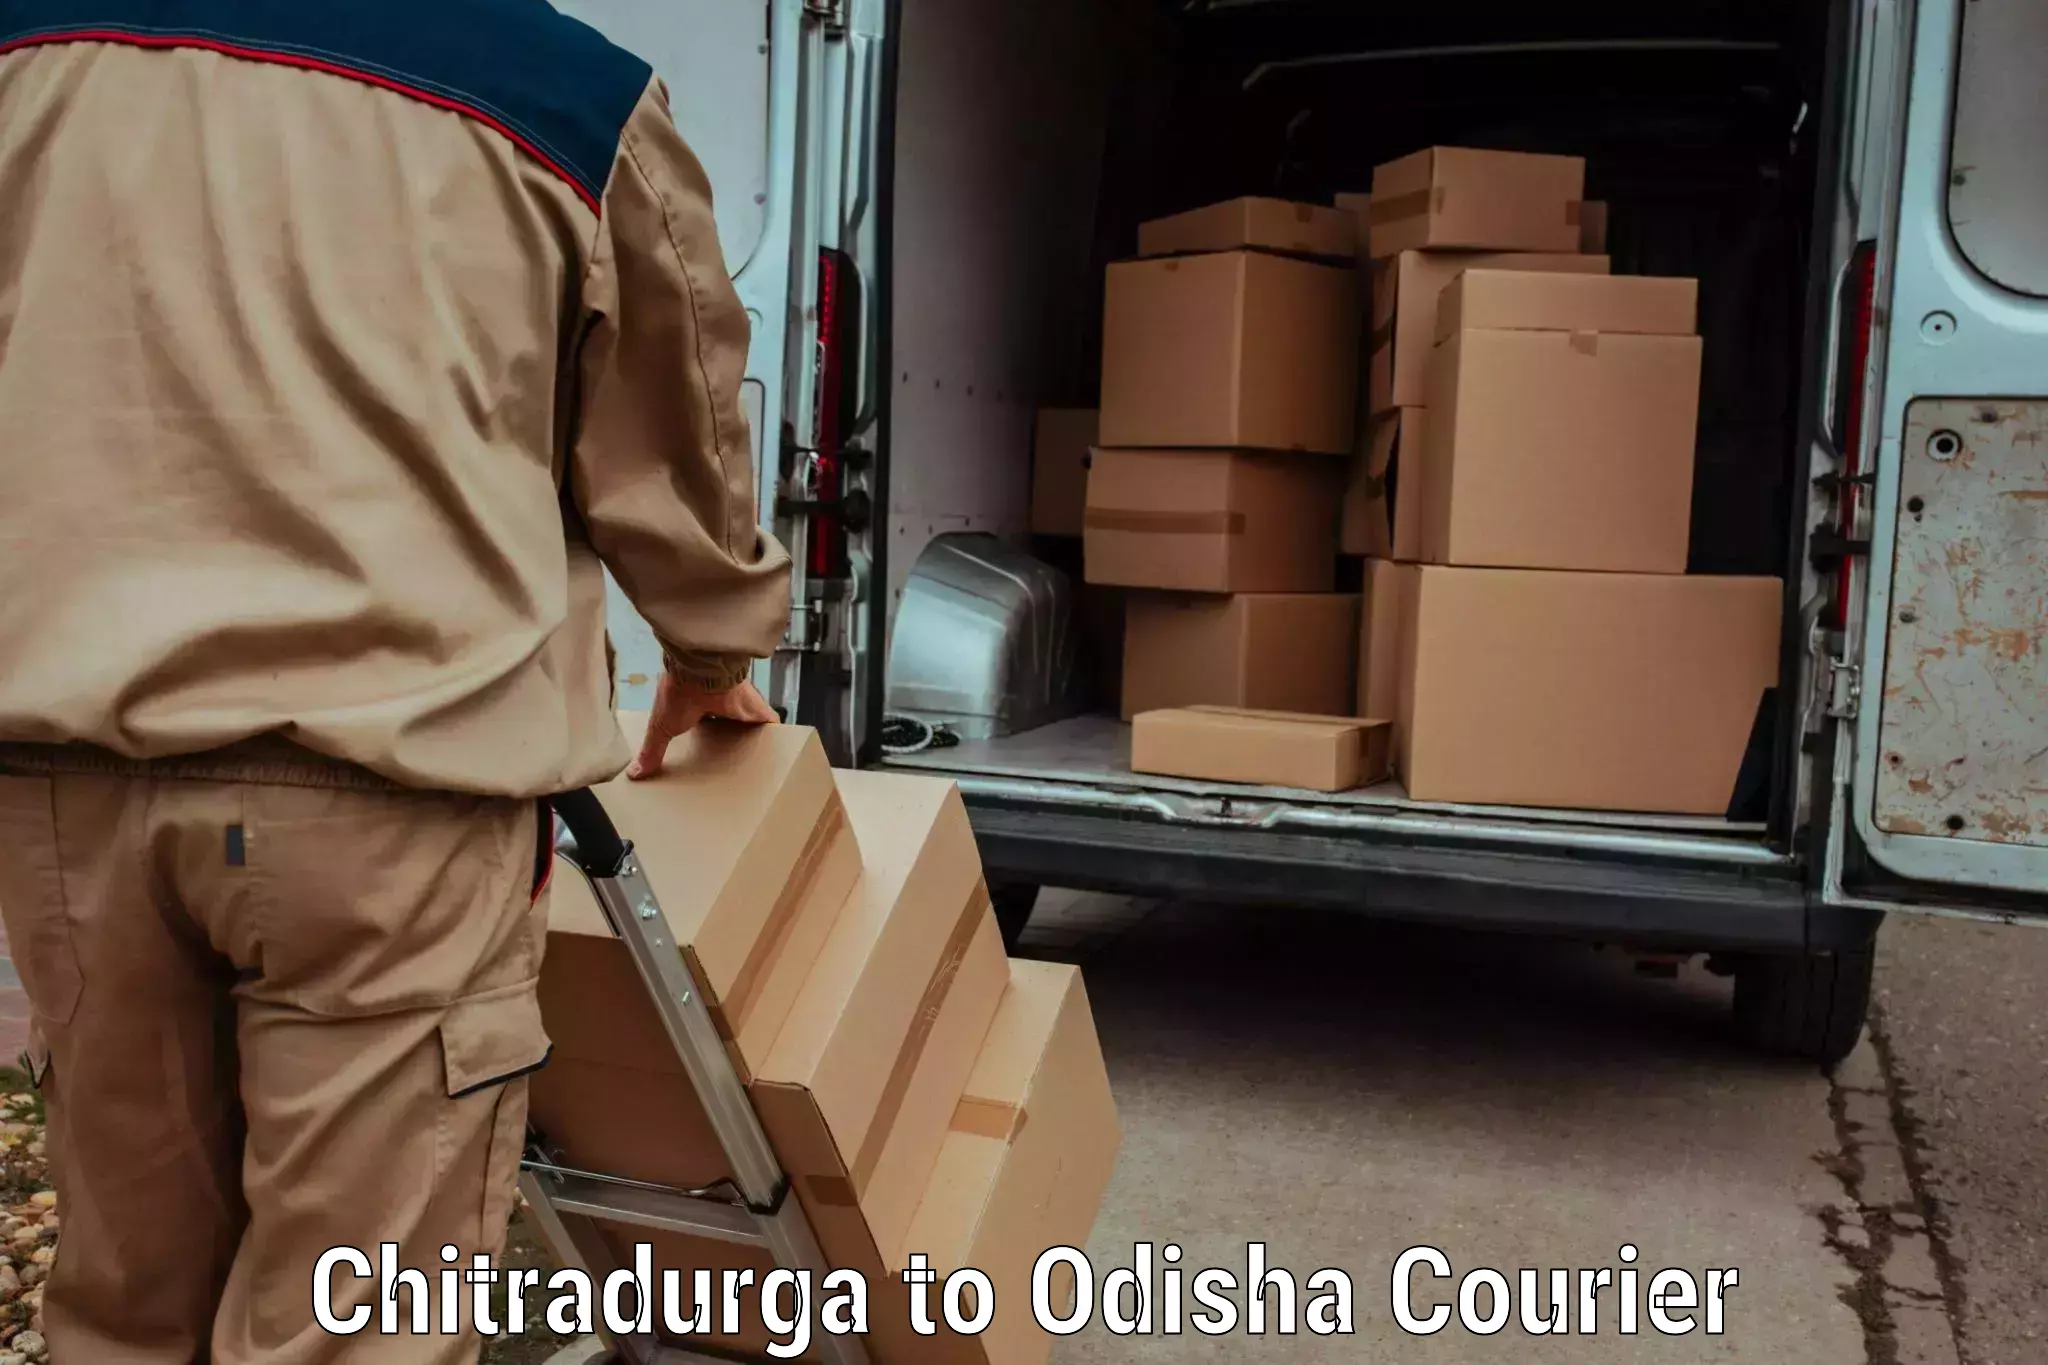 Quick dispatch service Chitradurga to Titilagarh